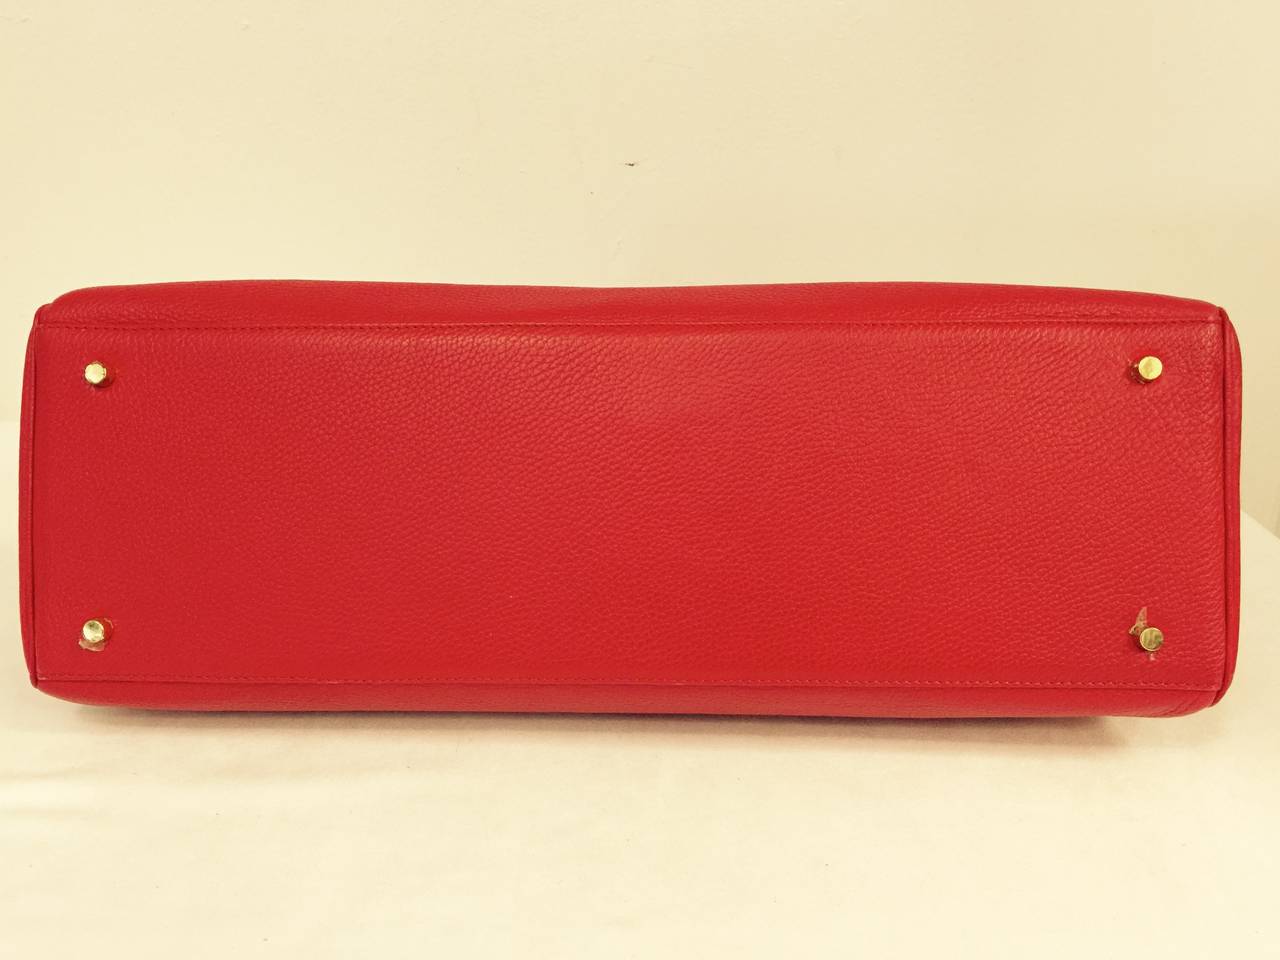 2008 Hermes Kelly Red Togo Bag 50 For Sale at 1stdibs